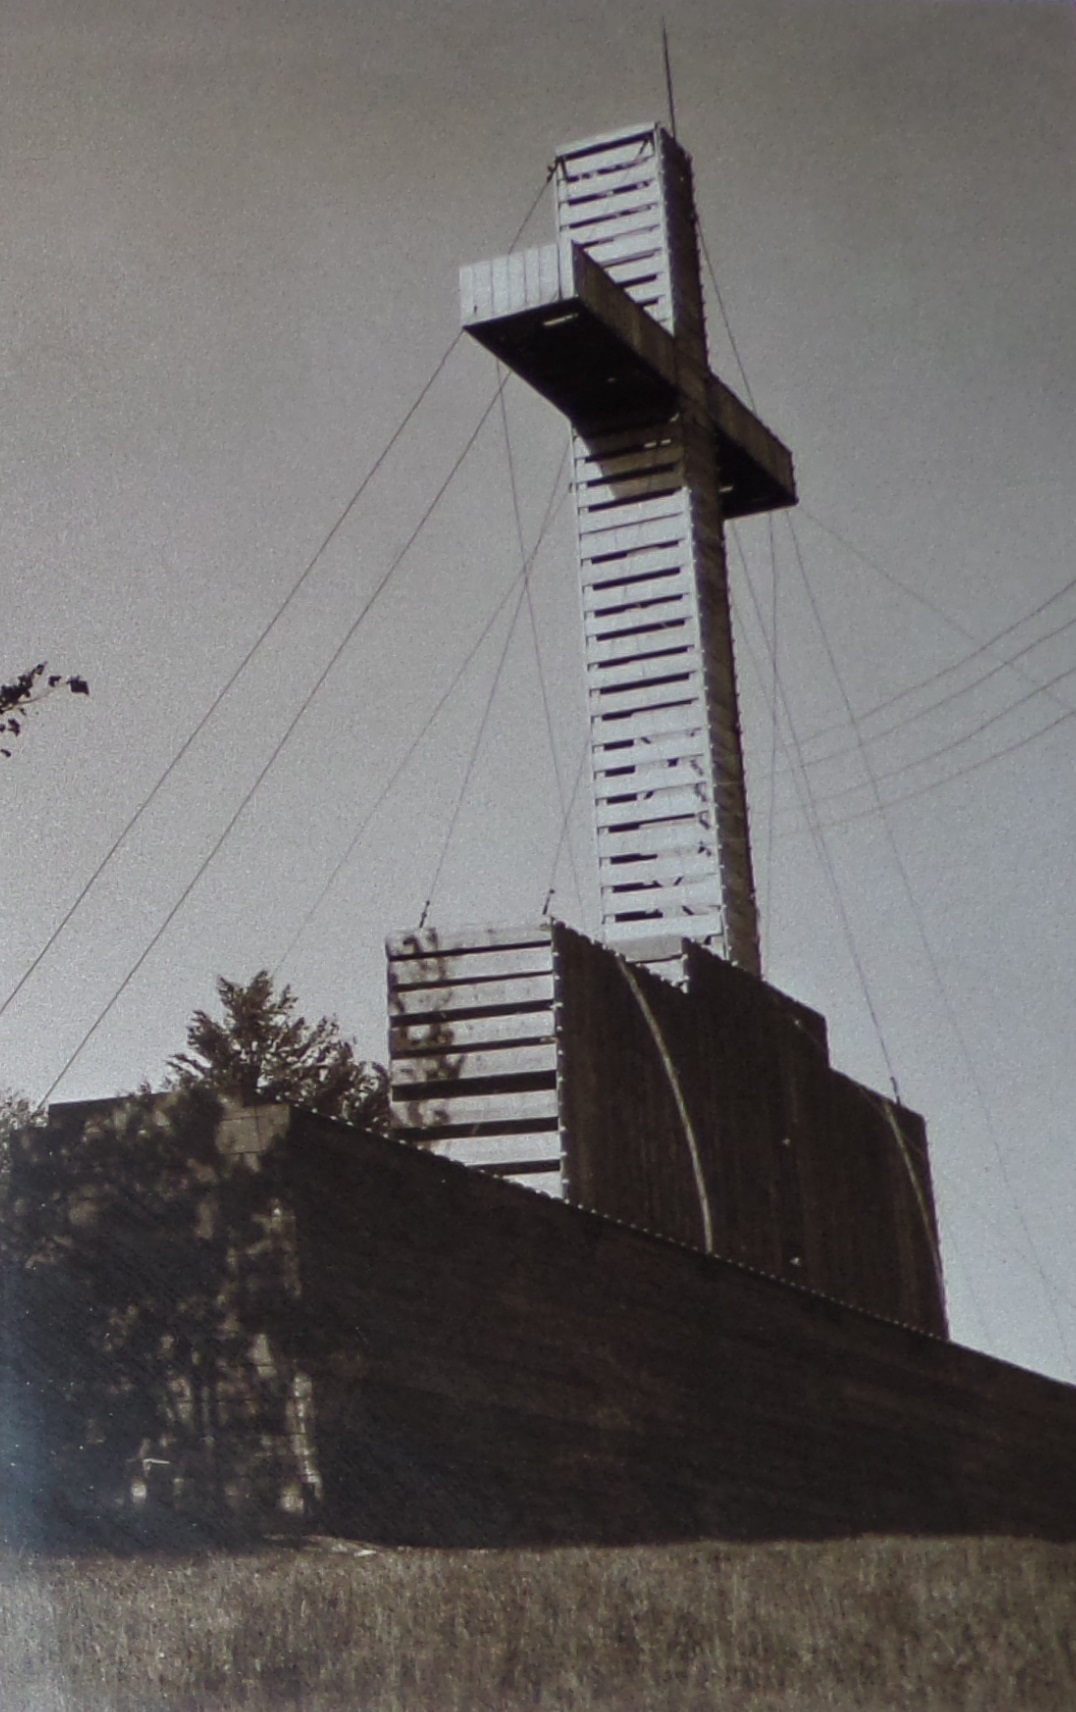 V roku 1937 bol na Kohútke postavený tento drevený kríž, ktorý bol osvetlený vďaka elektrine z Přerov. Nanešťastie koncom 2. svetovej vojny v roku 1945 zhorel...